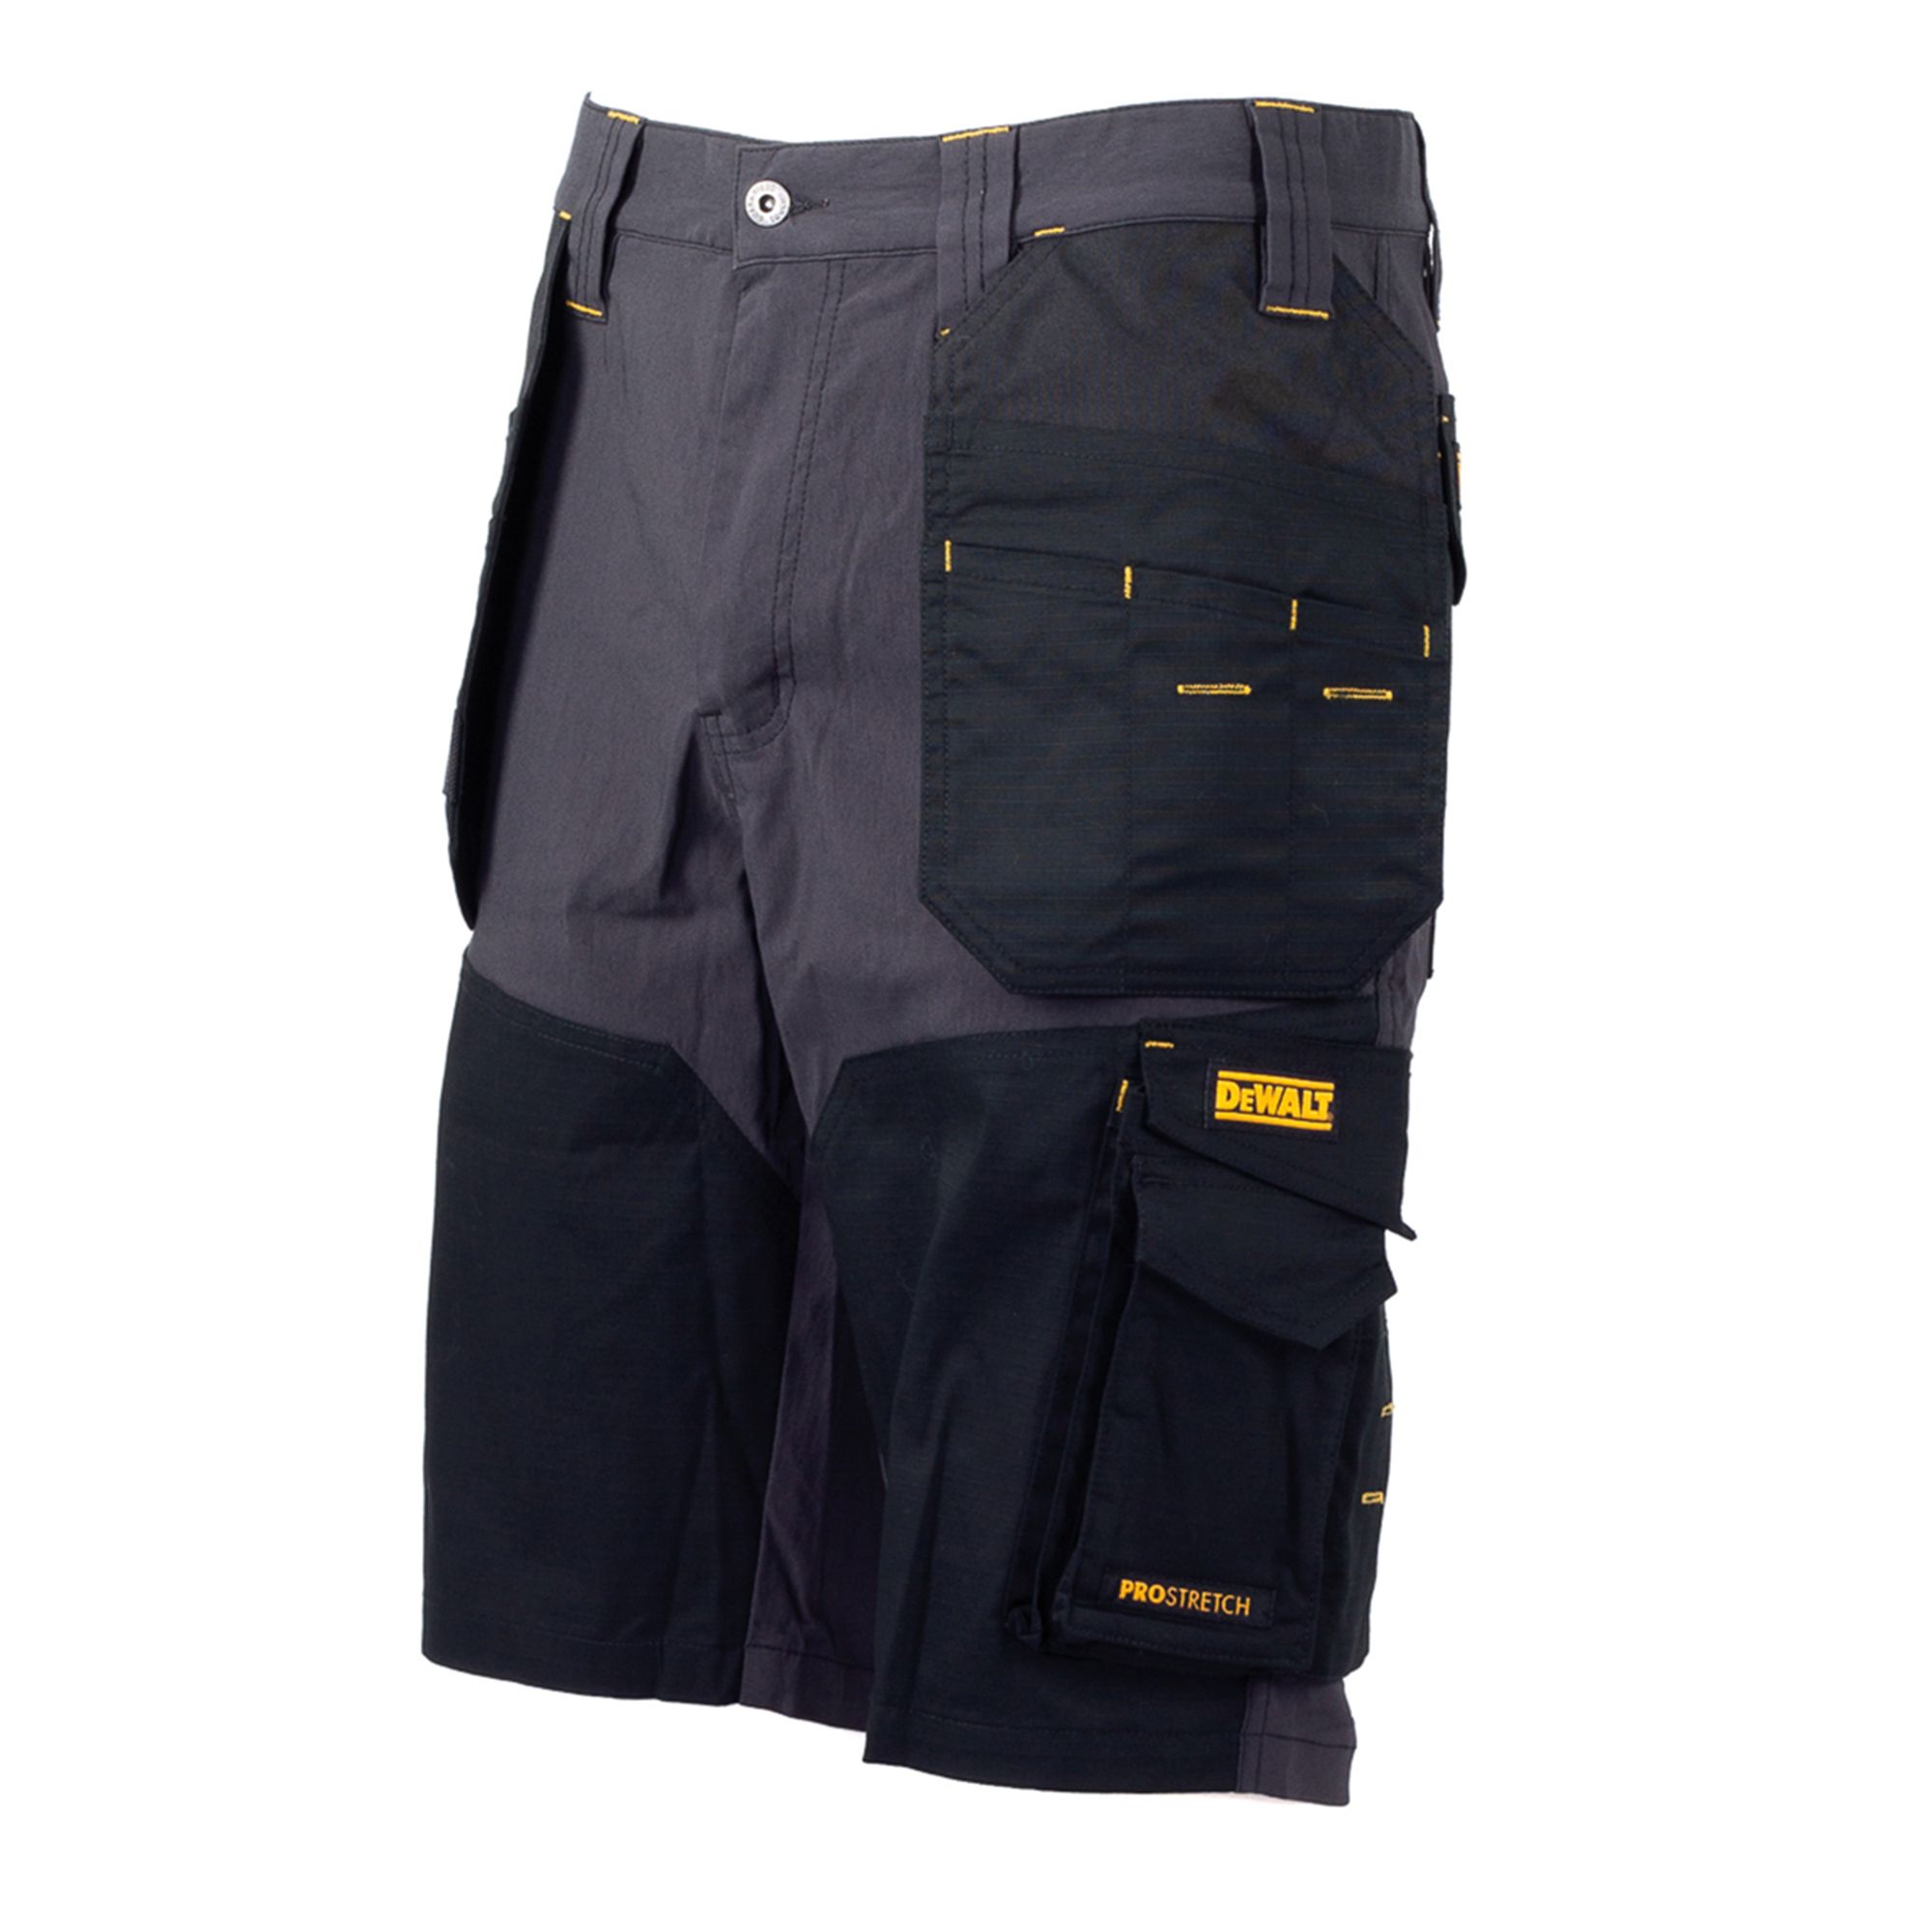 DeWalt Fontana Grey & black Shorts W34"